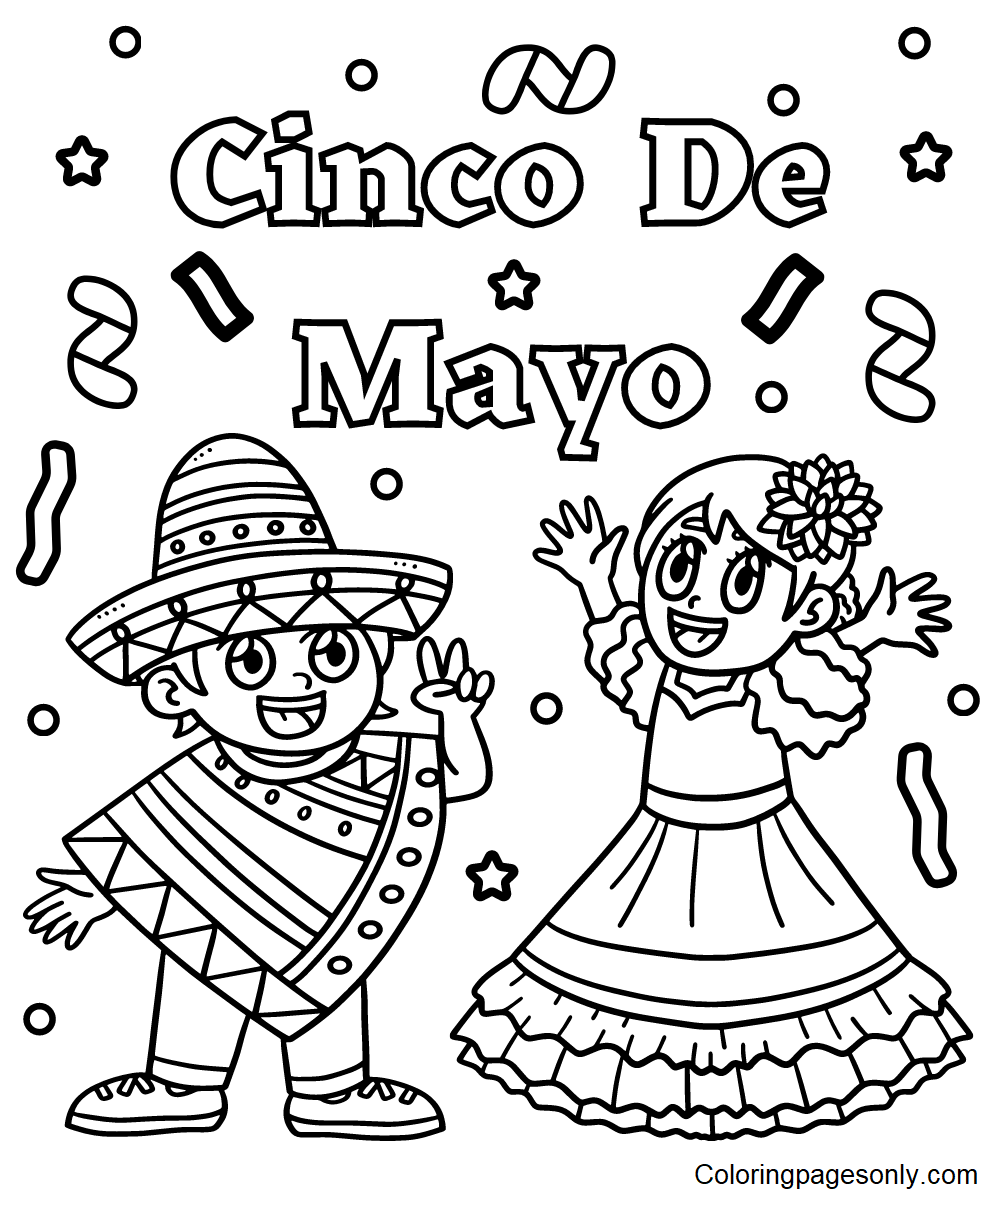 Bambini che celebrano il Cinco De Mayo da colorare